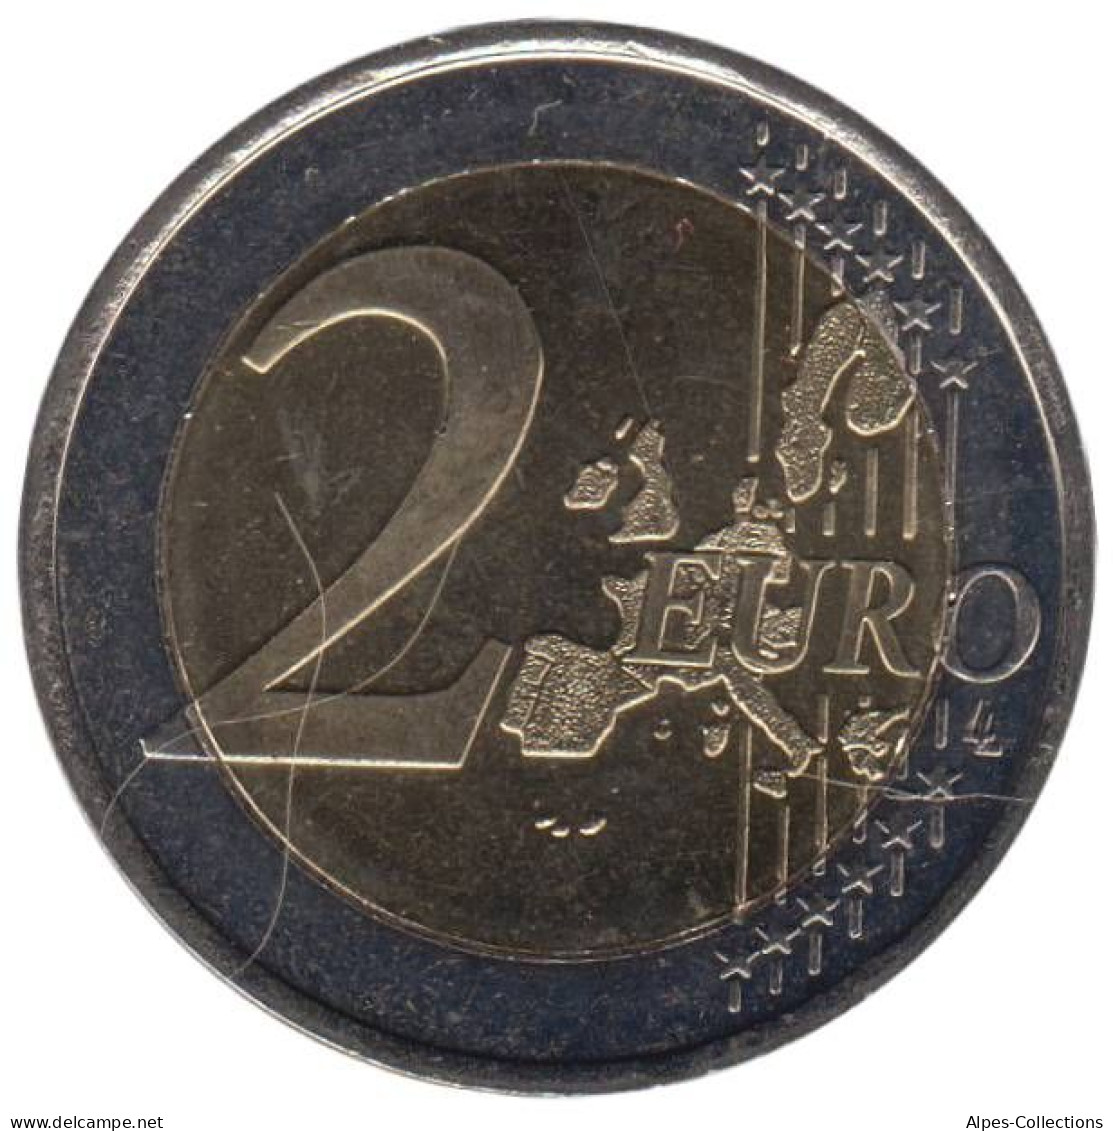 FI20003.1 - FINLANDE - 2 Euros - 2003 - Finlandia